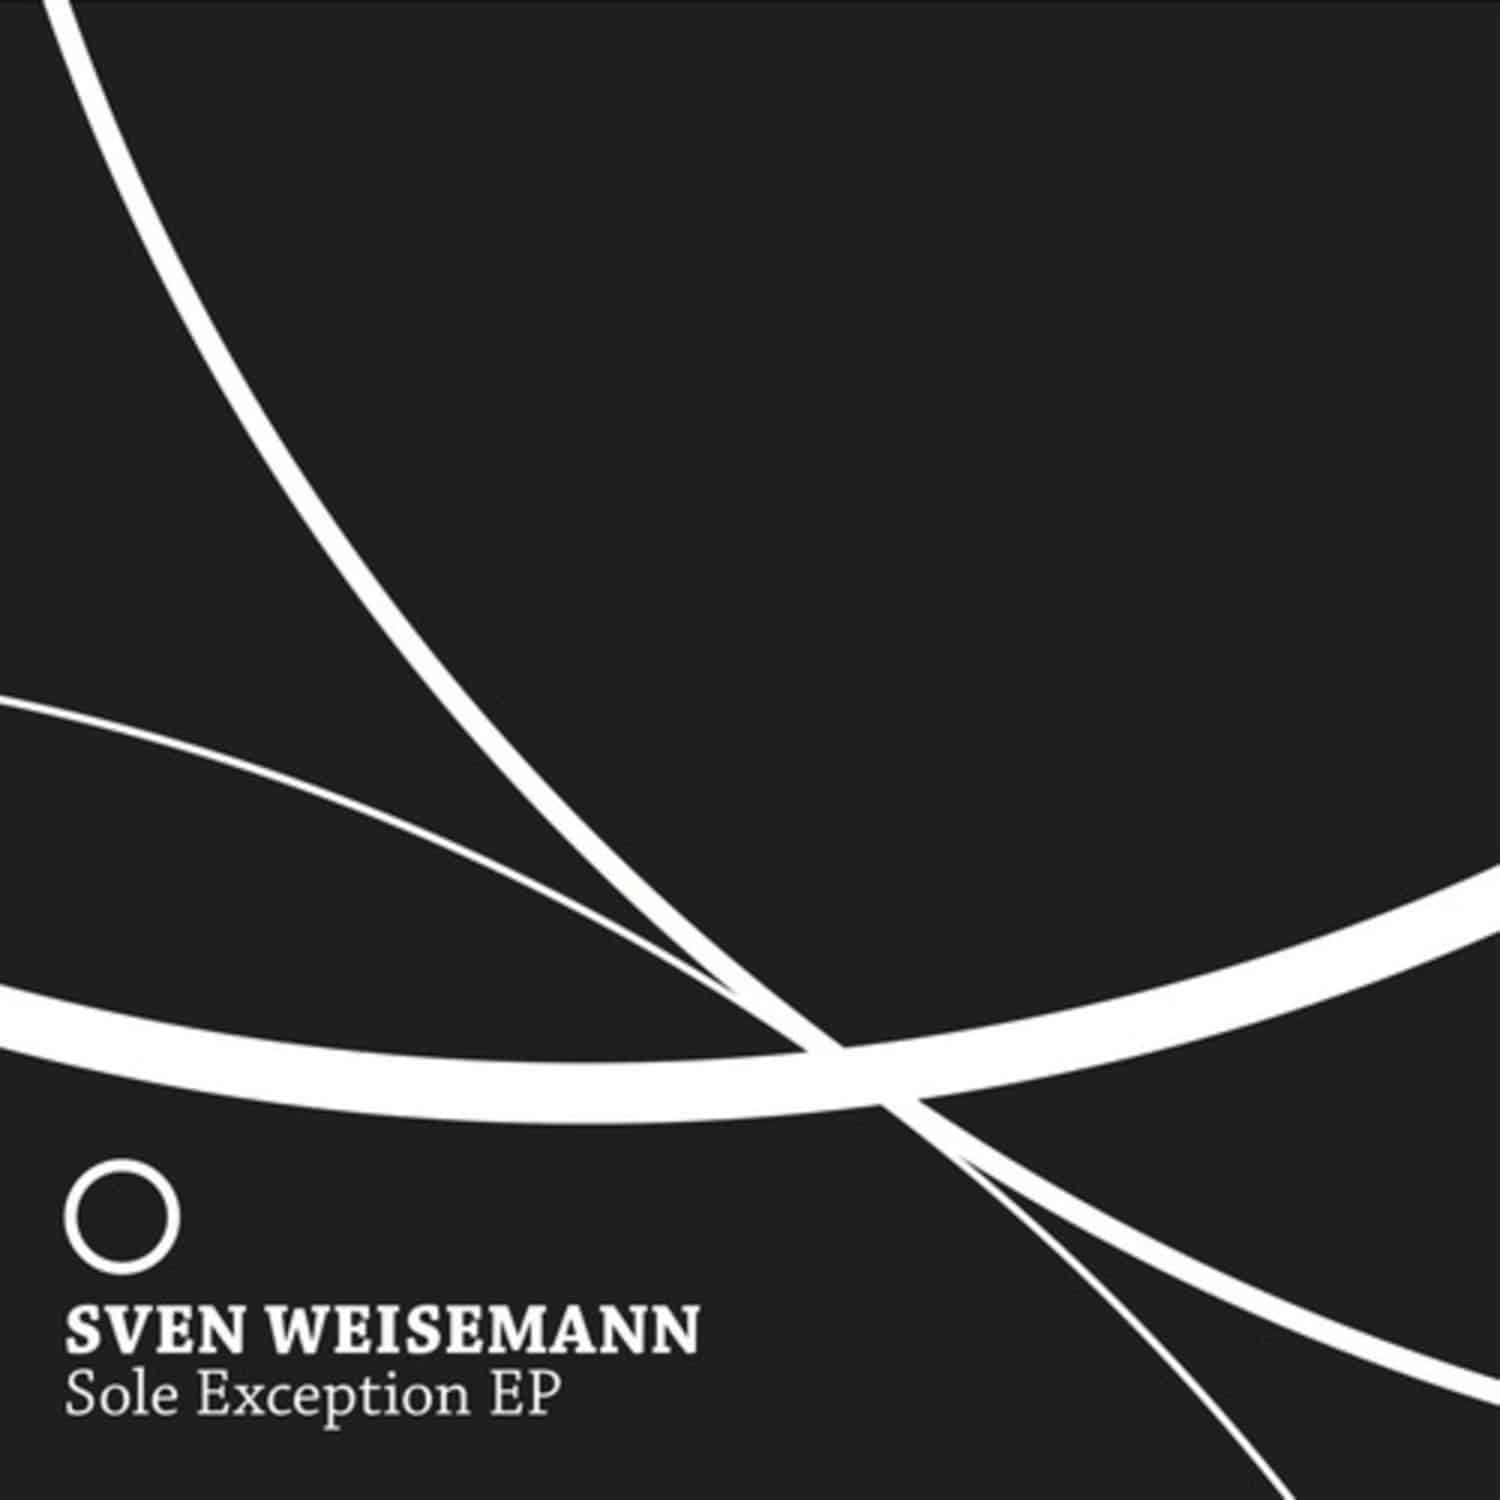 Sven Weisemann - SOLE EXCEPTION EP 